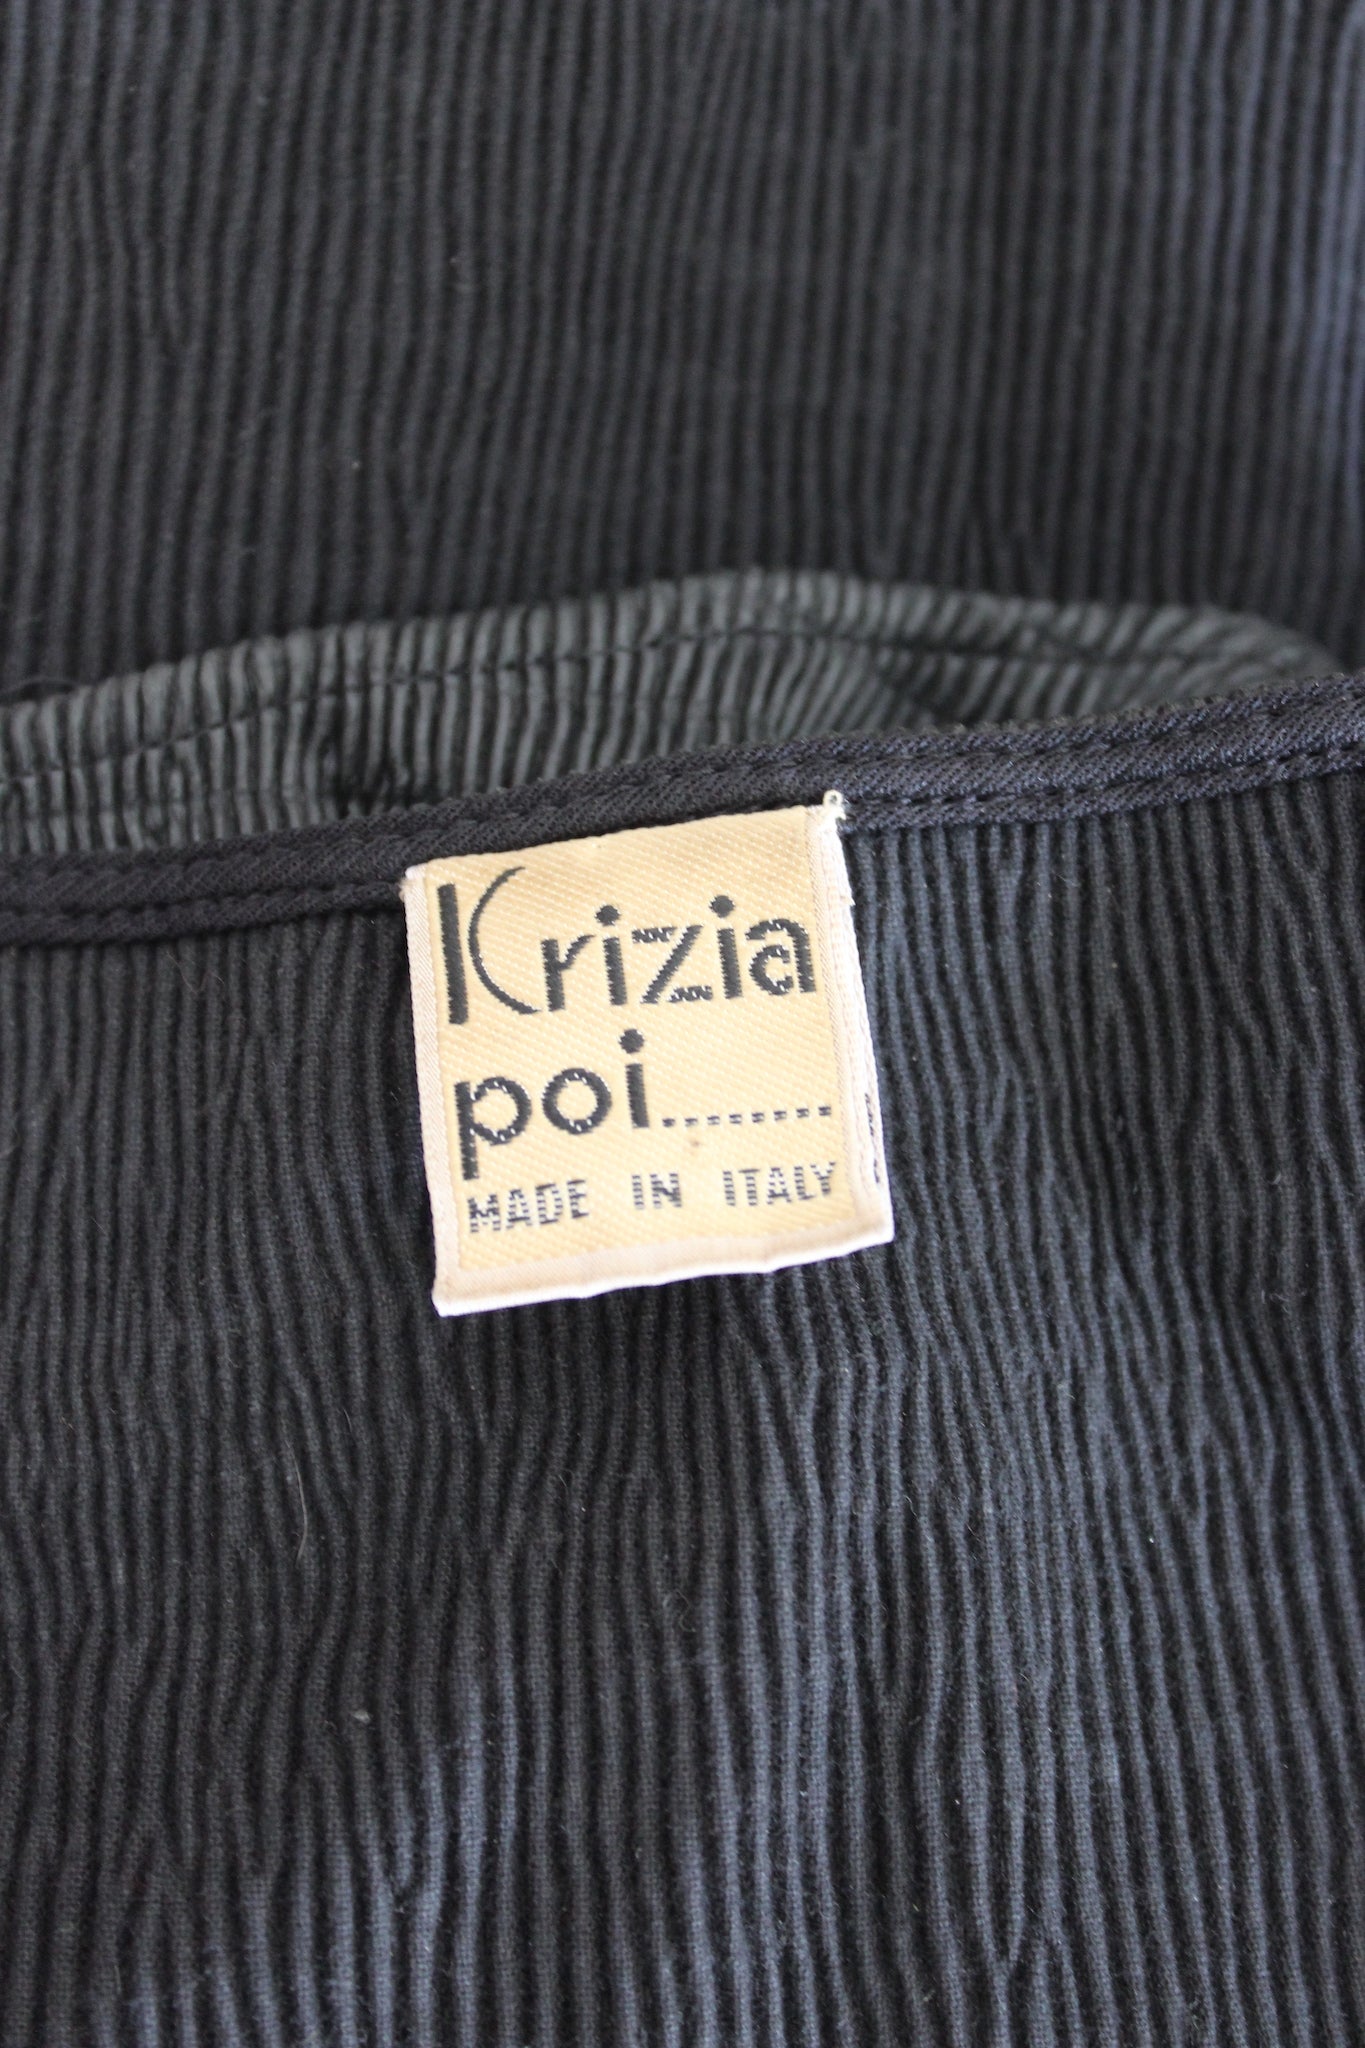 Krizia Black Faux Leather Pleated Vintage Short Top 80s